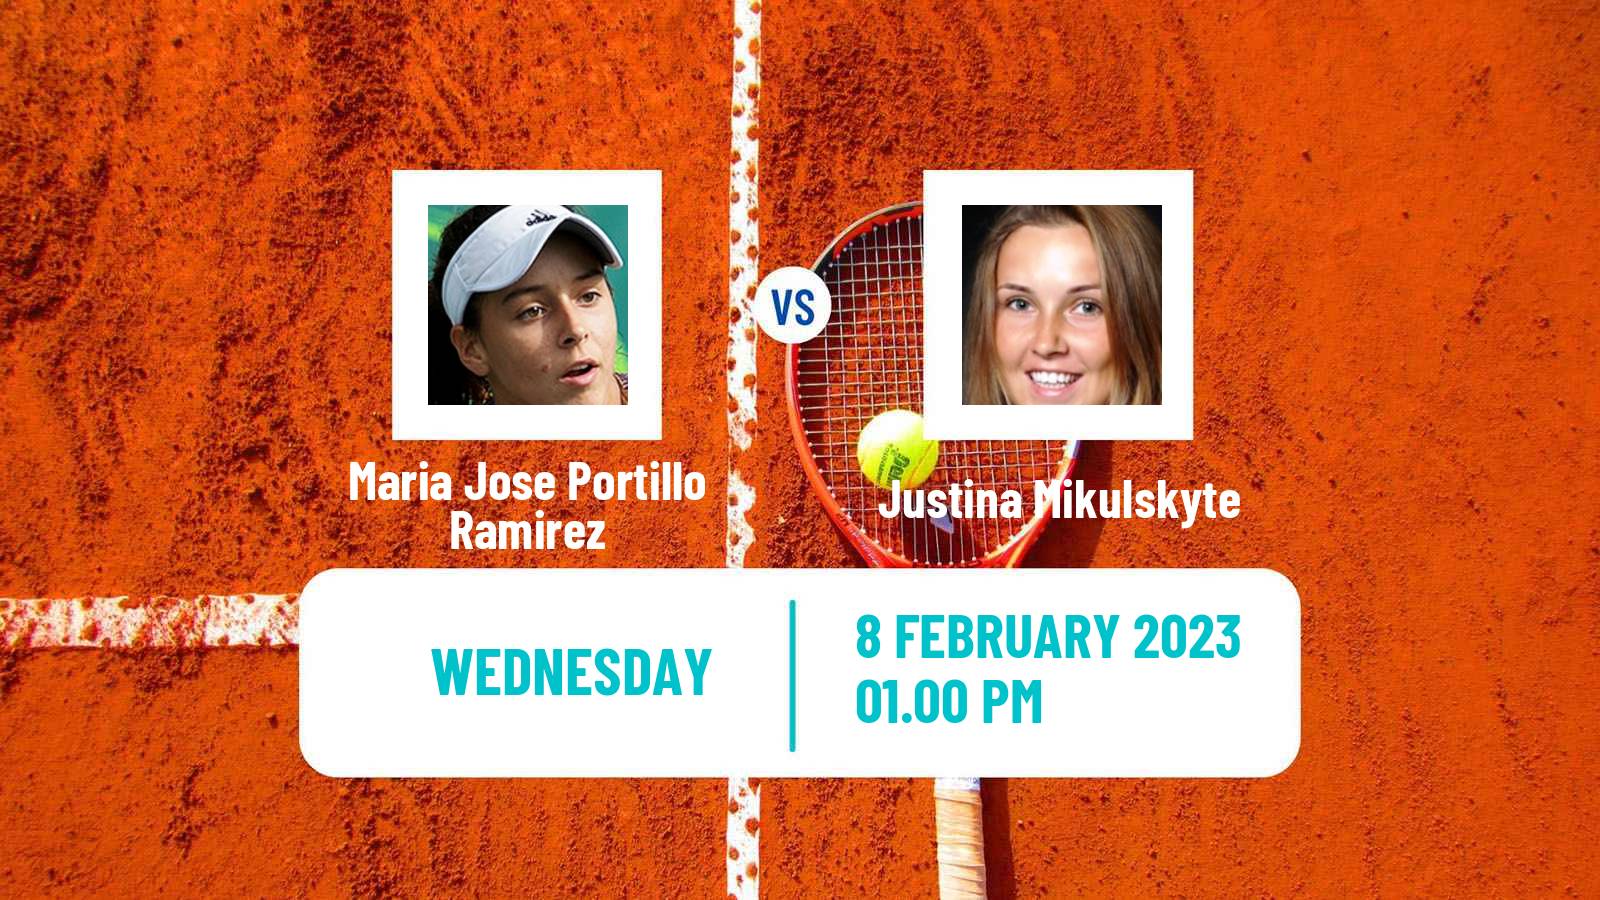 Tennis ITF Tournaments Maria Jose Portillo Ramirez - Justina Mikulskyte